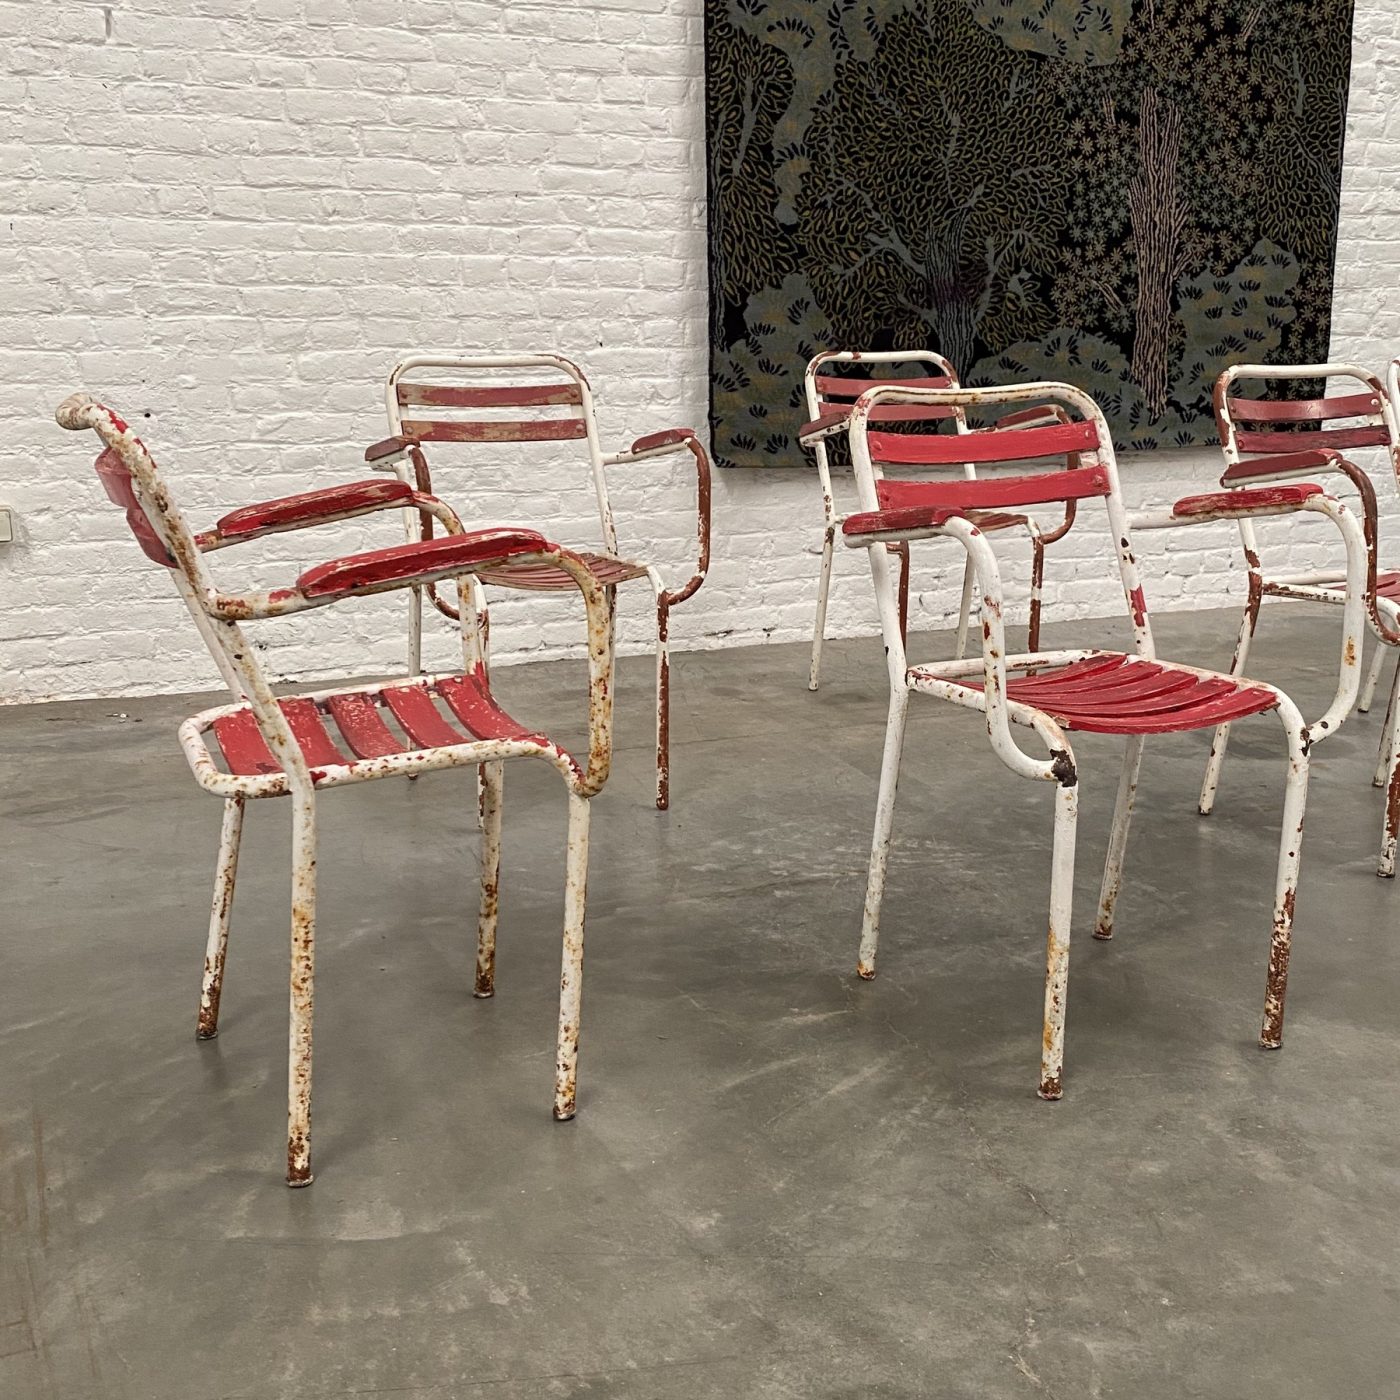 objet-vagabond-garden-chairs0008